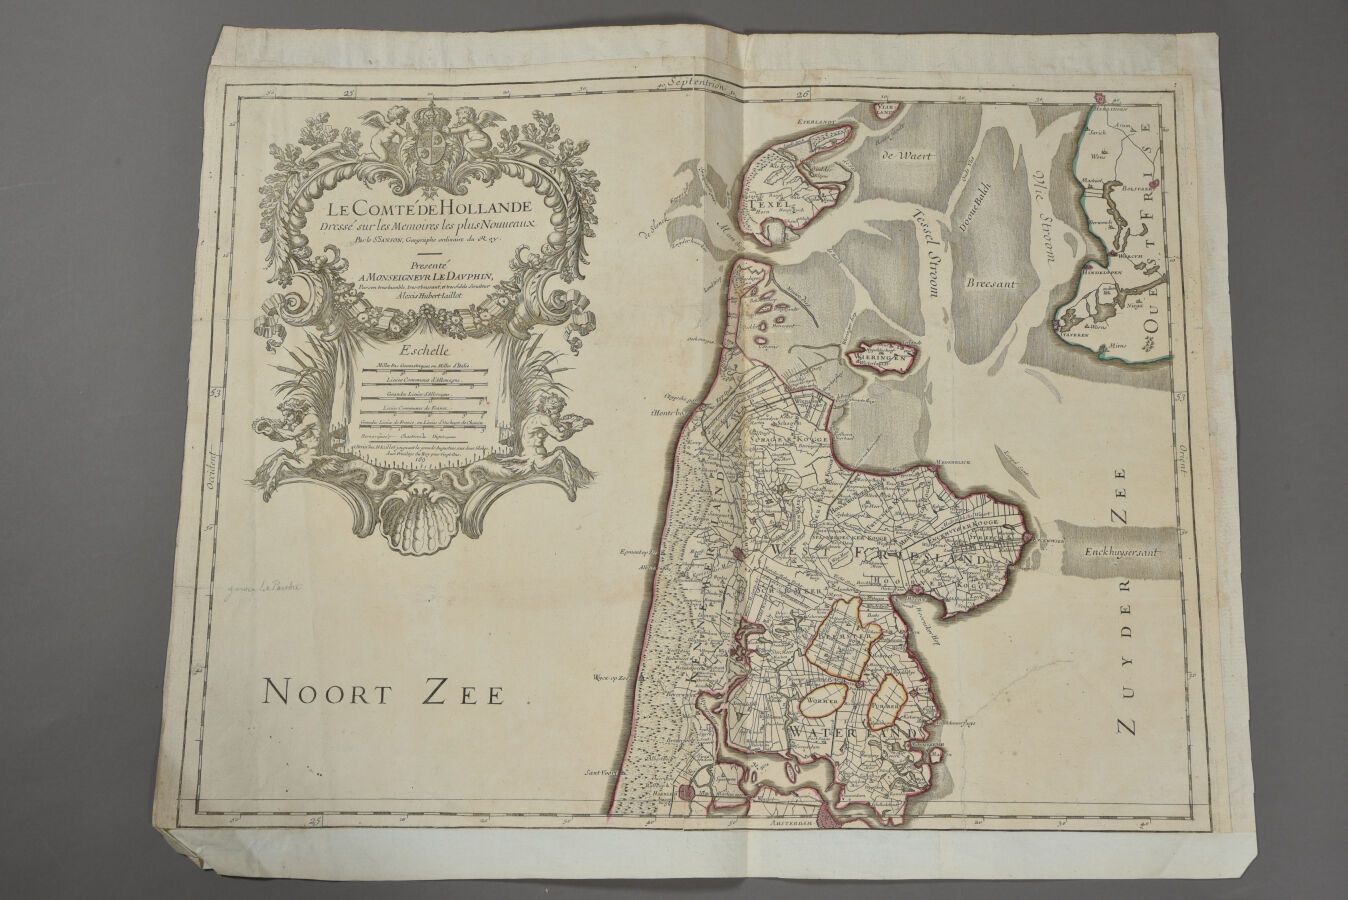 Null 休伯特-杰洛 (1632 - 1712)
荷兰郡的地图。约1700年。 
双开本。 
该地图被重新放大。 
背面有停止的撕裂和加固条。